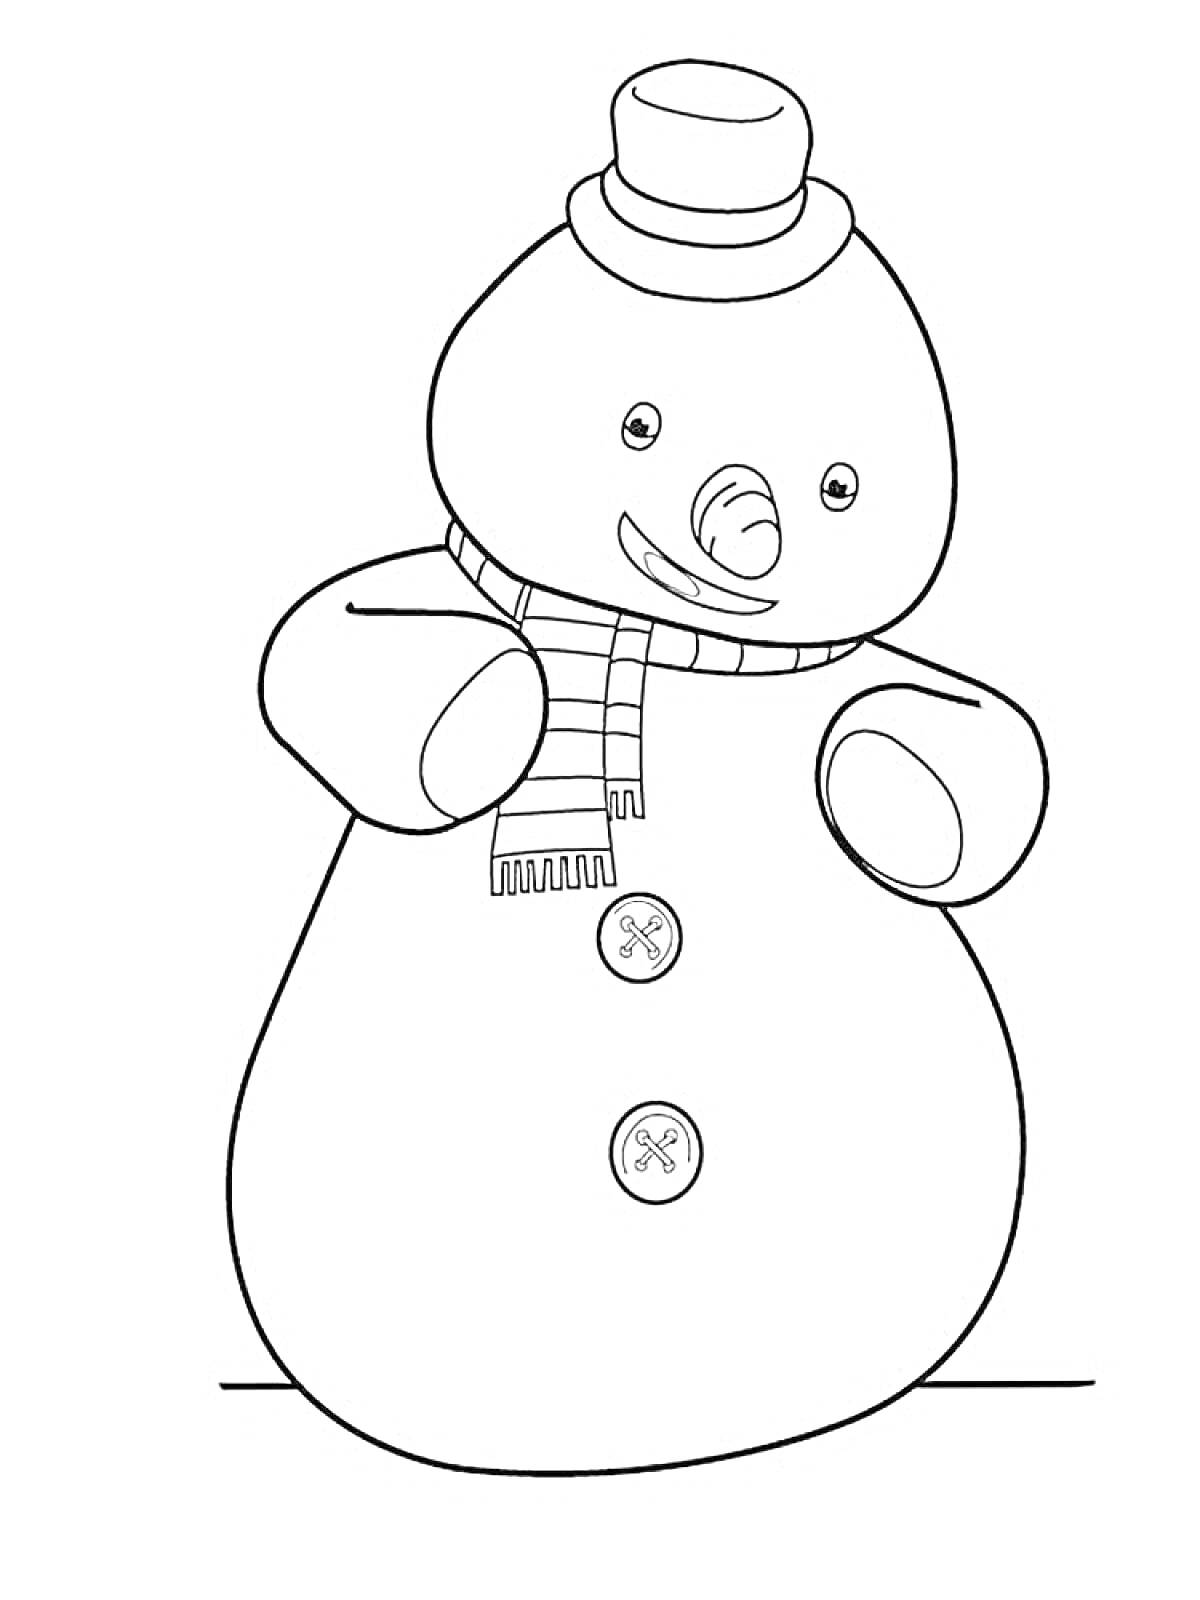 Раскраска Снеговик в шапке и шарфе с пуговицами